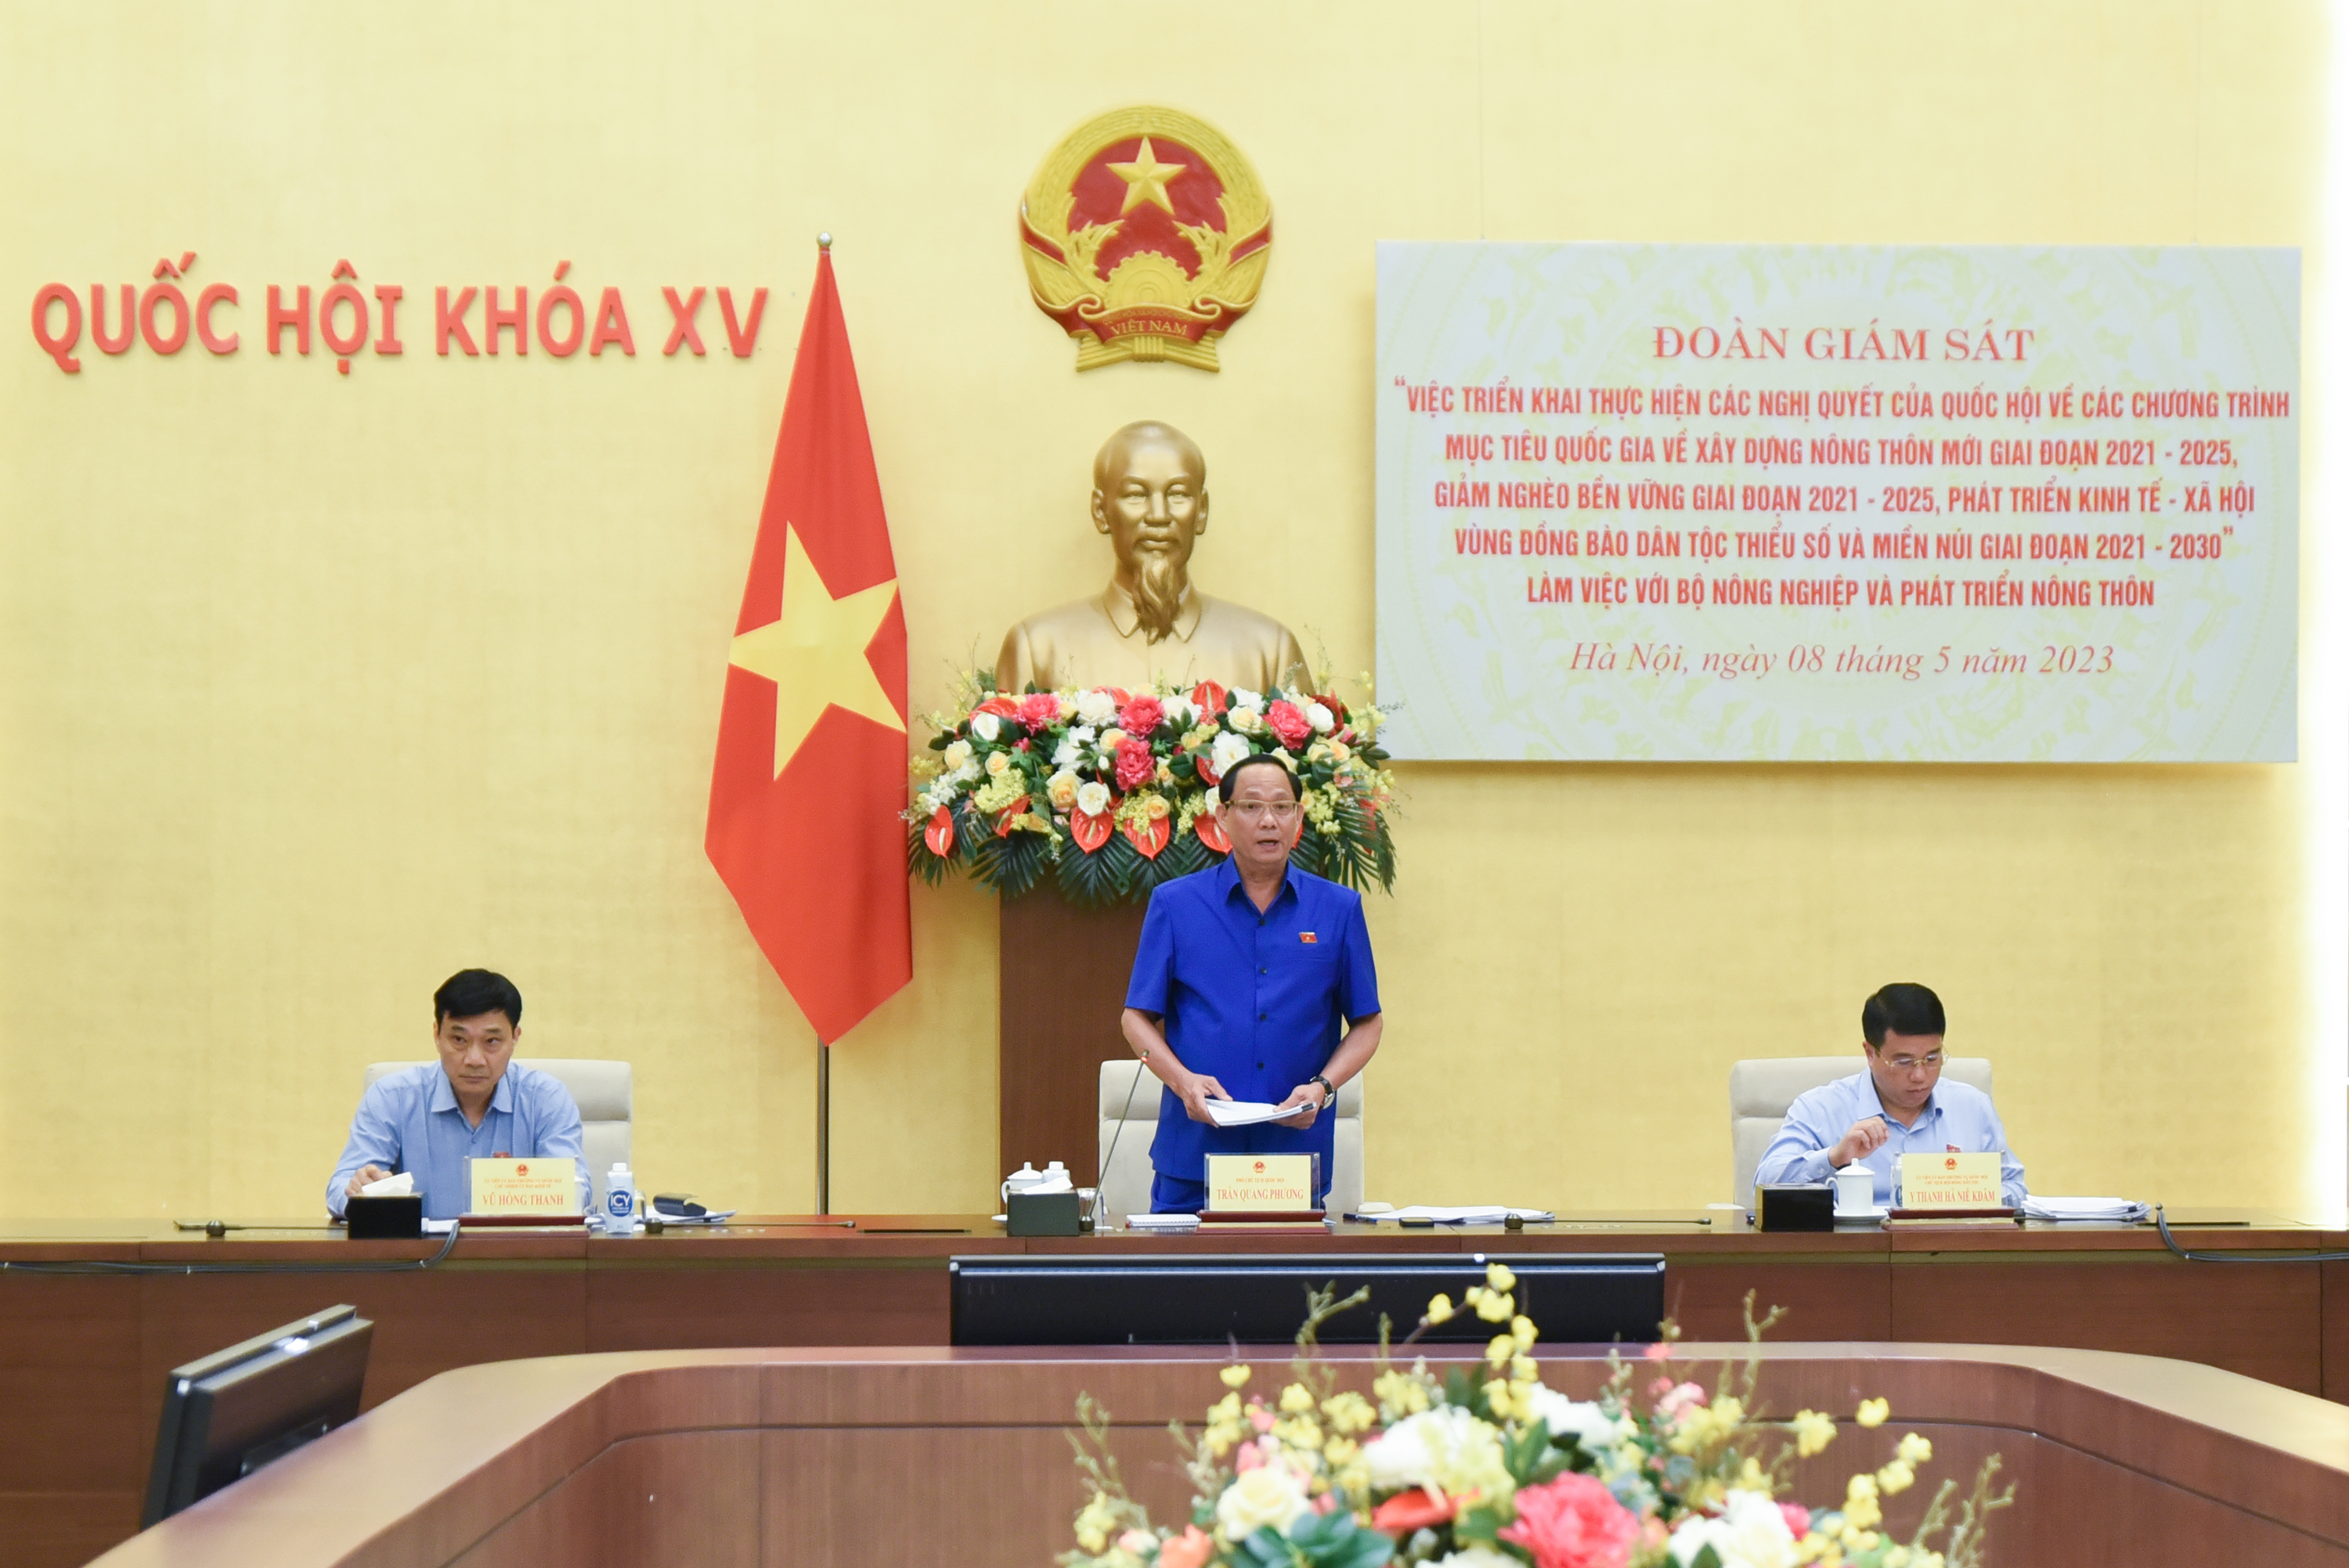 Phó Chủ tịch Quốc hội, Thượng tướng Trần Quang Phương - Trưởng đoàn giám sát chia sẻ về thực hiện các chương trình mục tiêu quốc gia. Ảnh: Tùng Đinh.